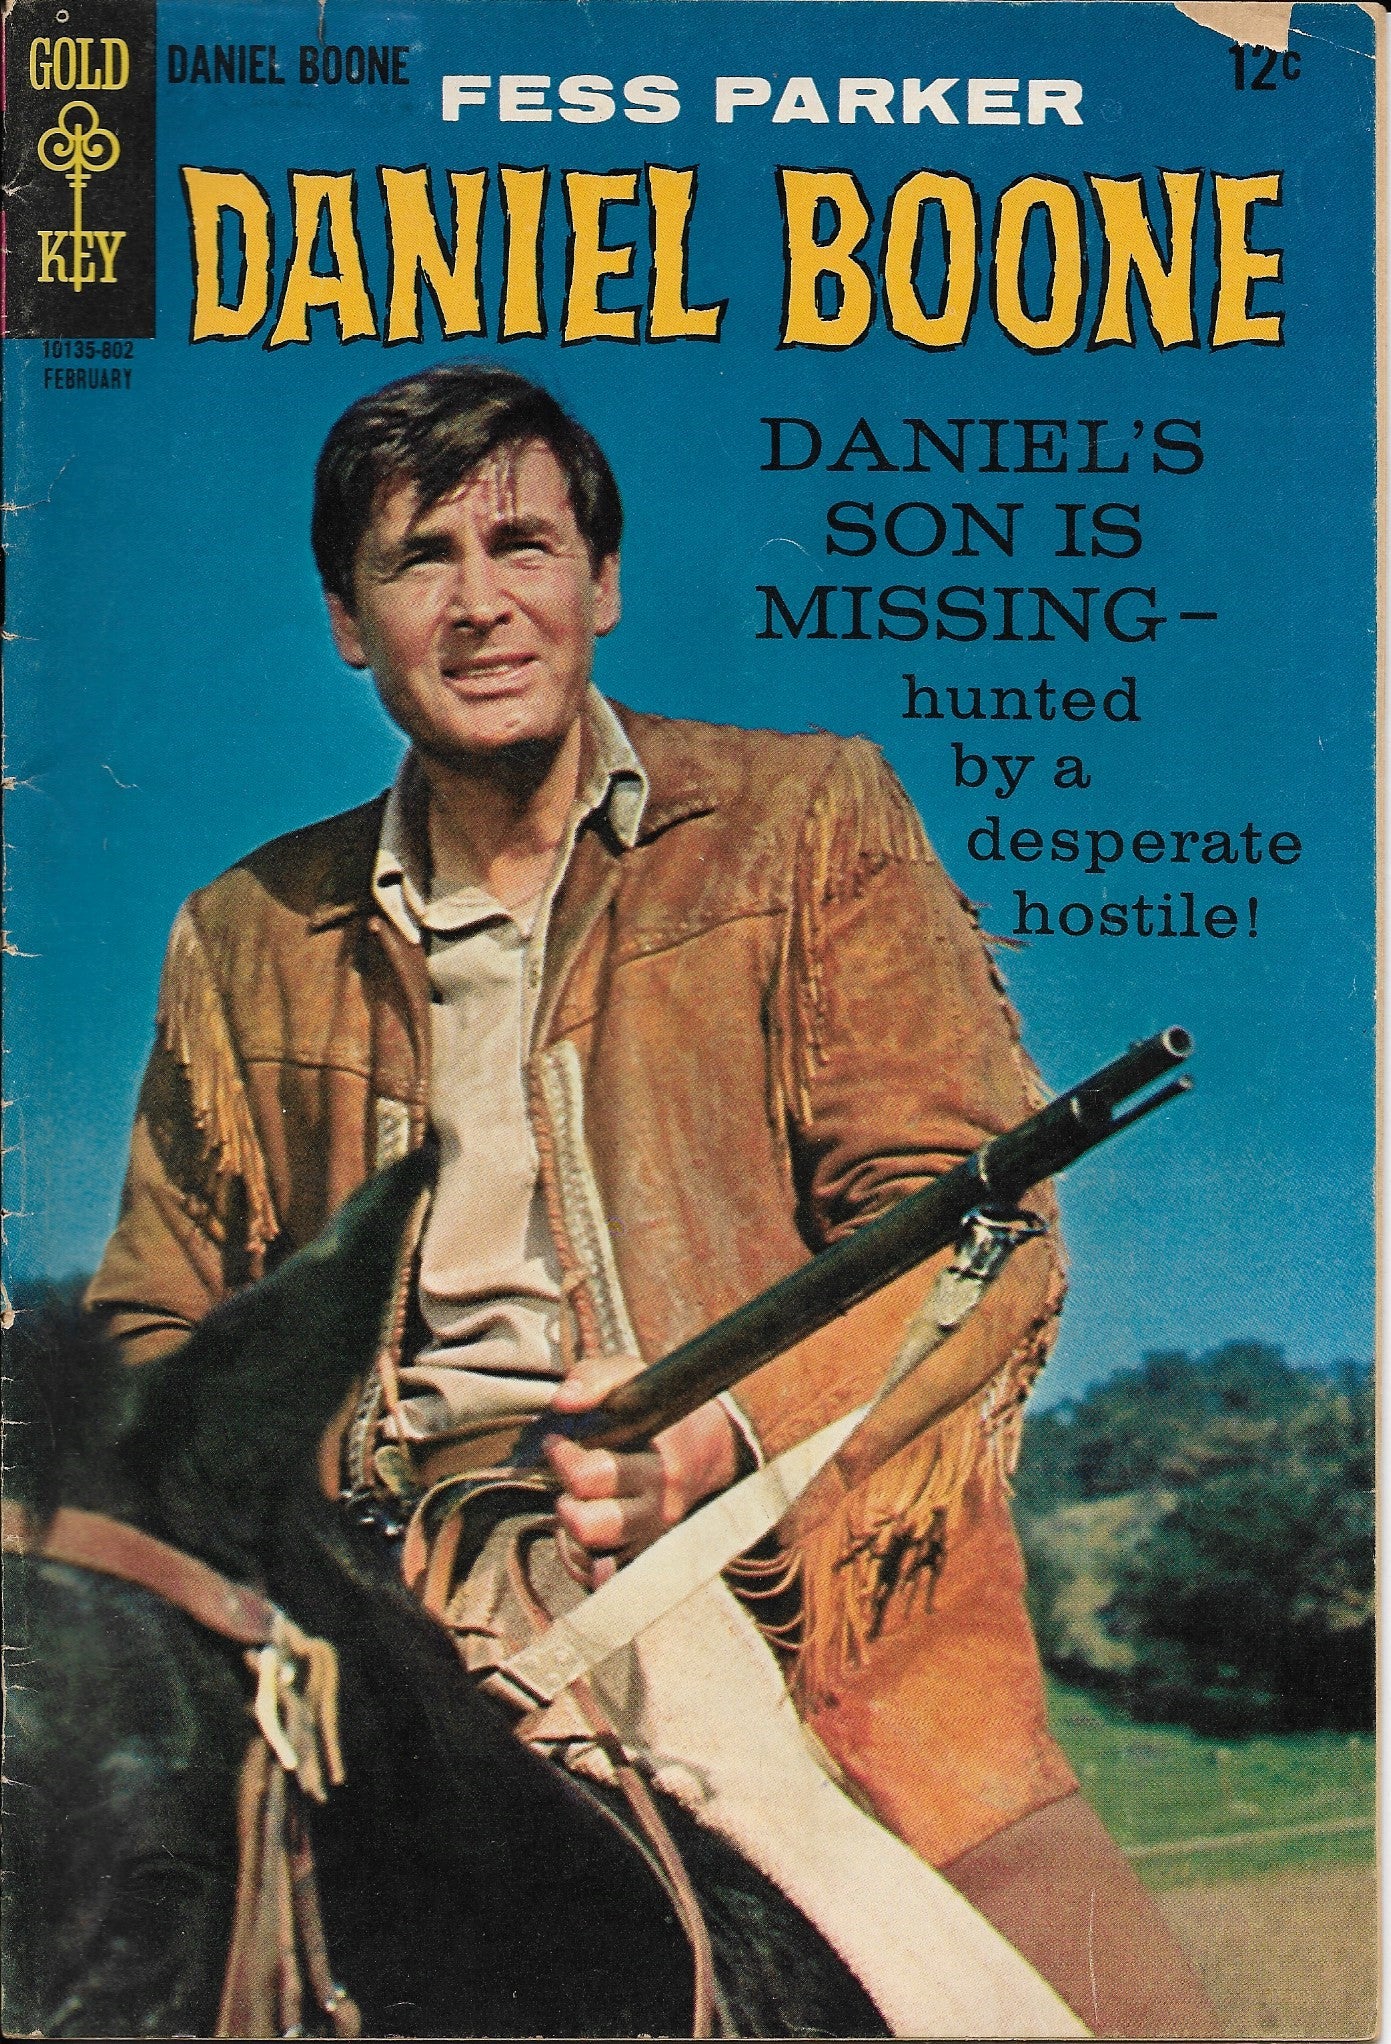 Daniel Boone No. 12, Gold Key Comics, February 1968